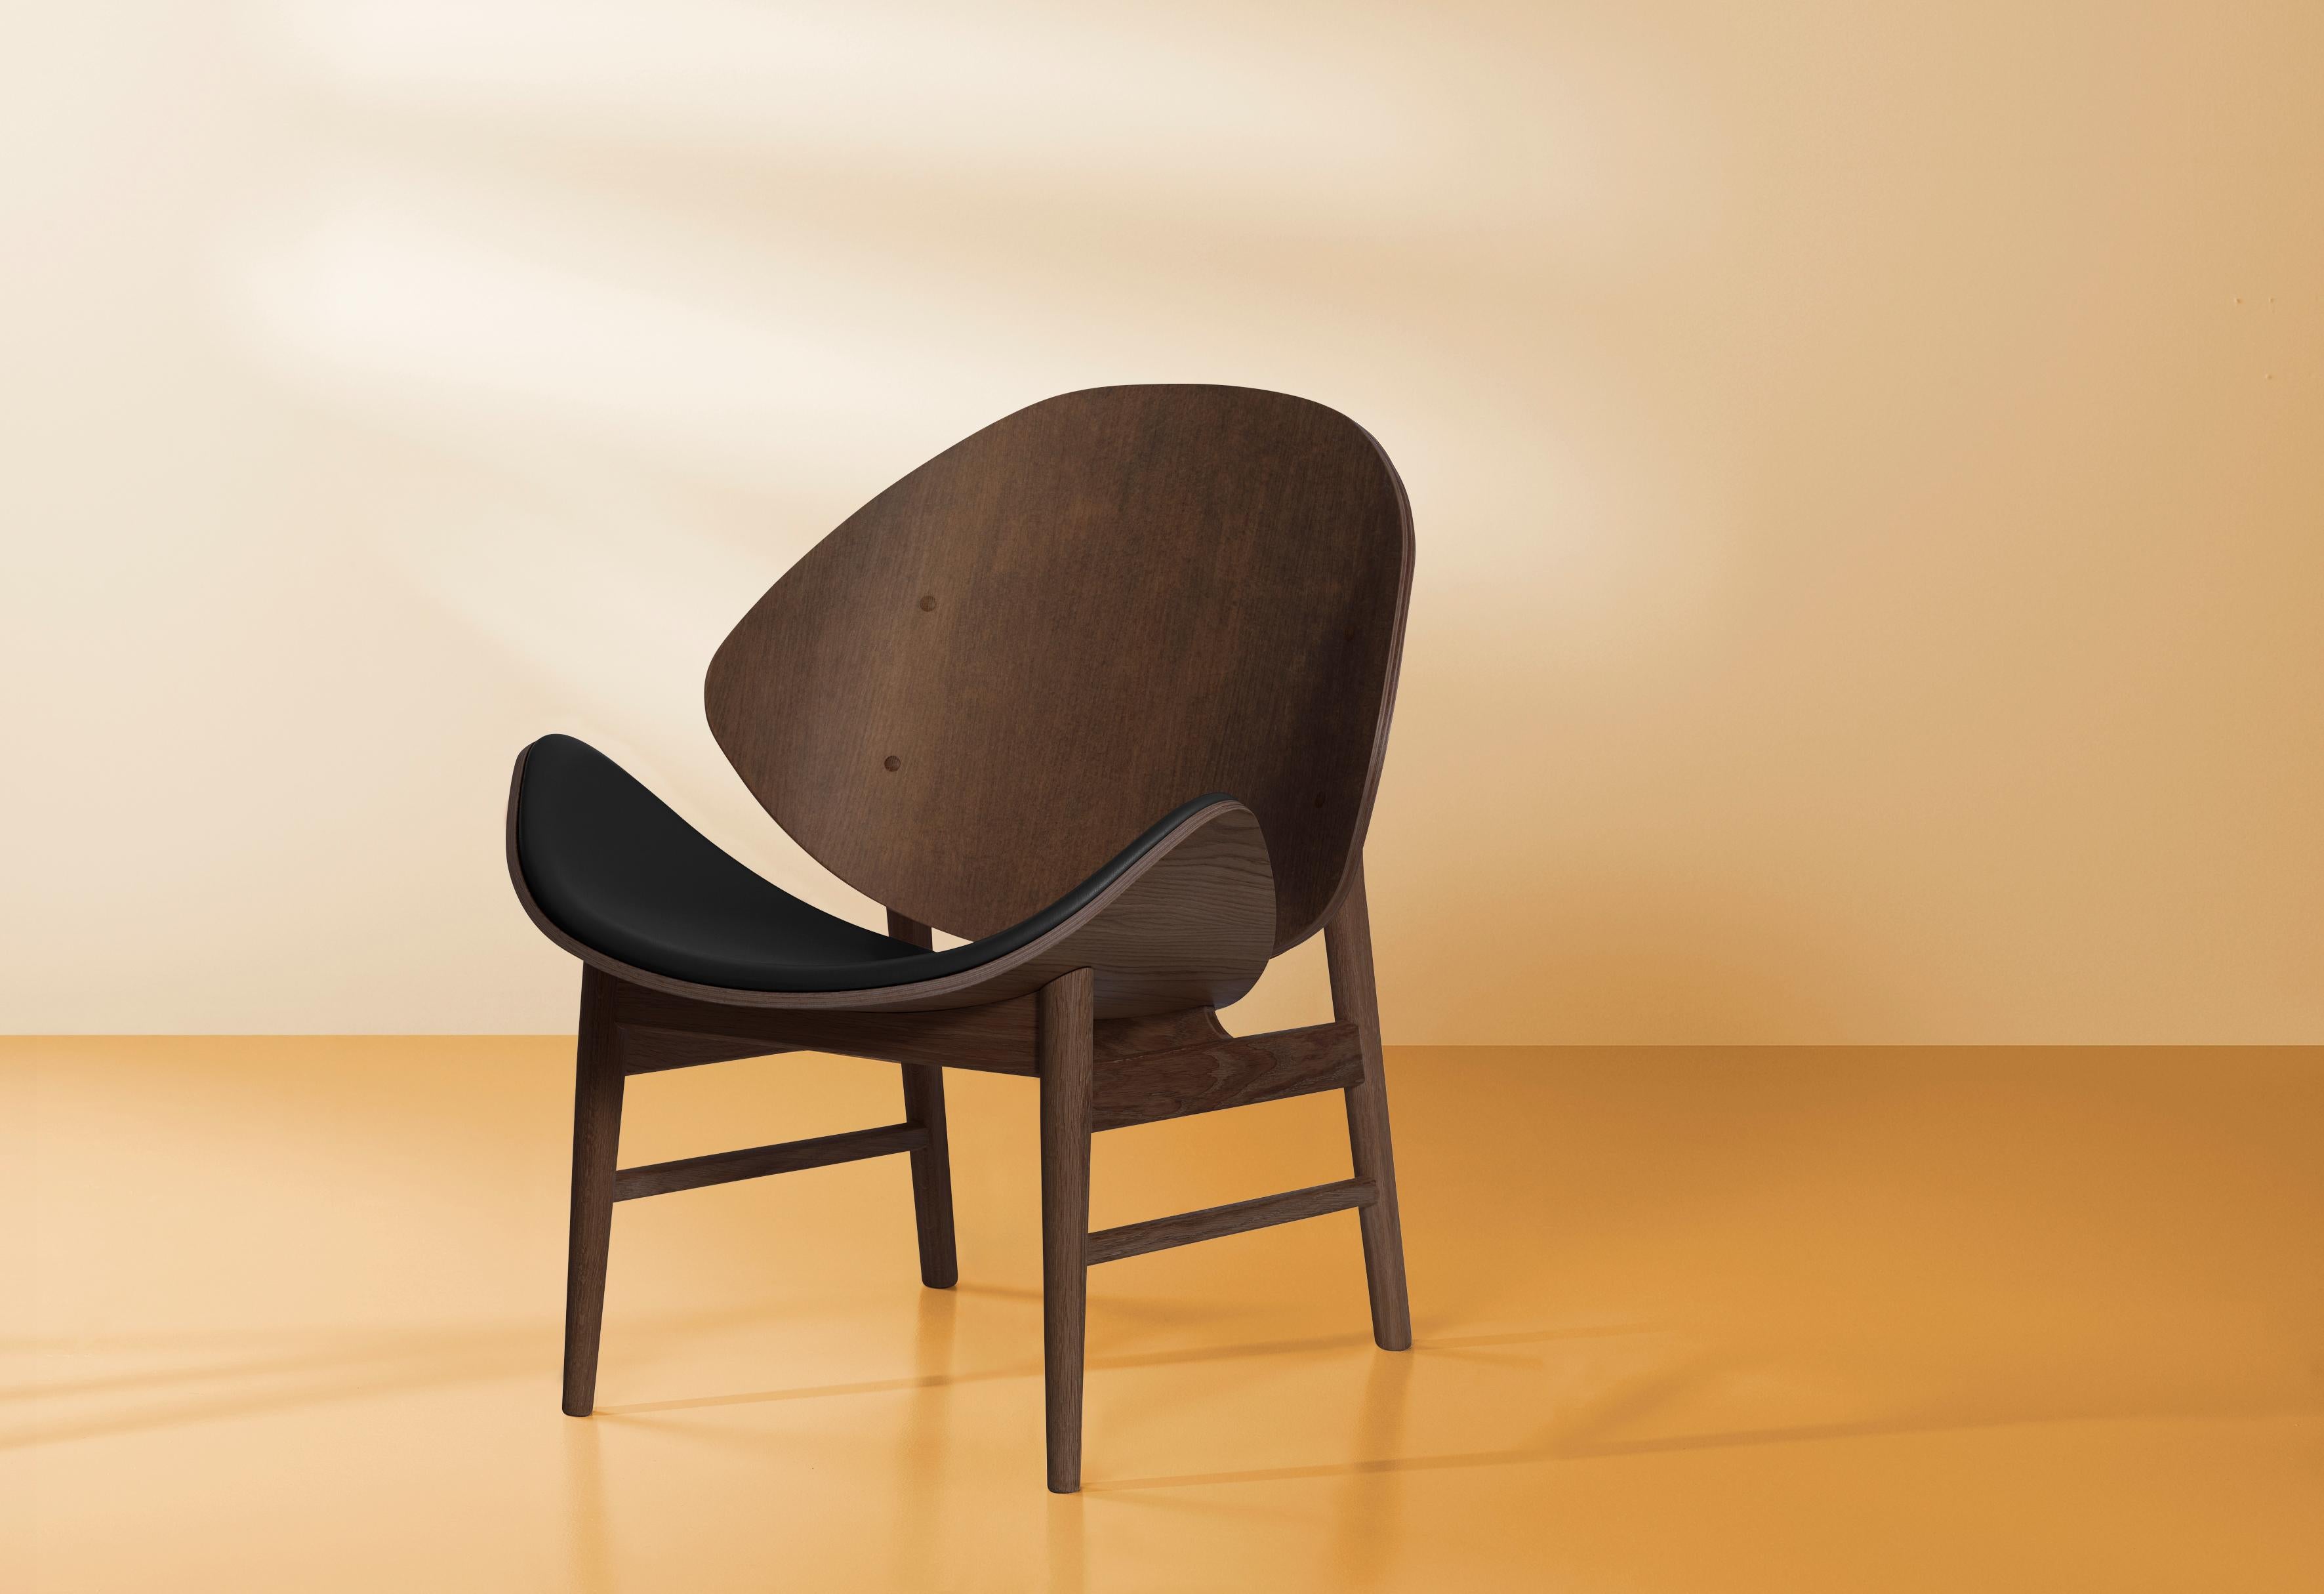 Cette chaise légère et élégante, l'orange, a été conçue dans les années 1950 par le célèbre architecte danois Hans Olsen. Grâce à son expression classique, la chaise orange s'intégrera parfaitement à un intérieur contemporain ou plus intemporel en